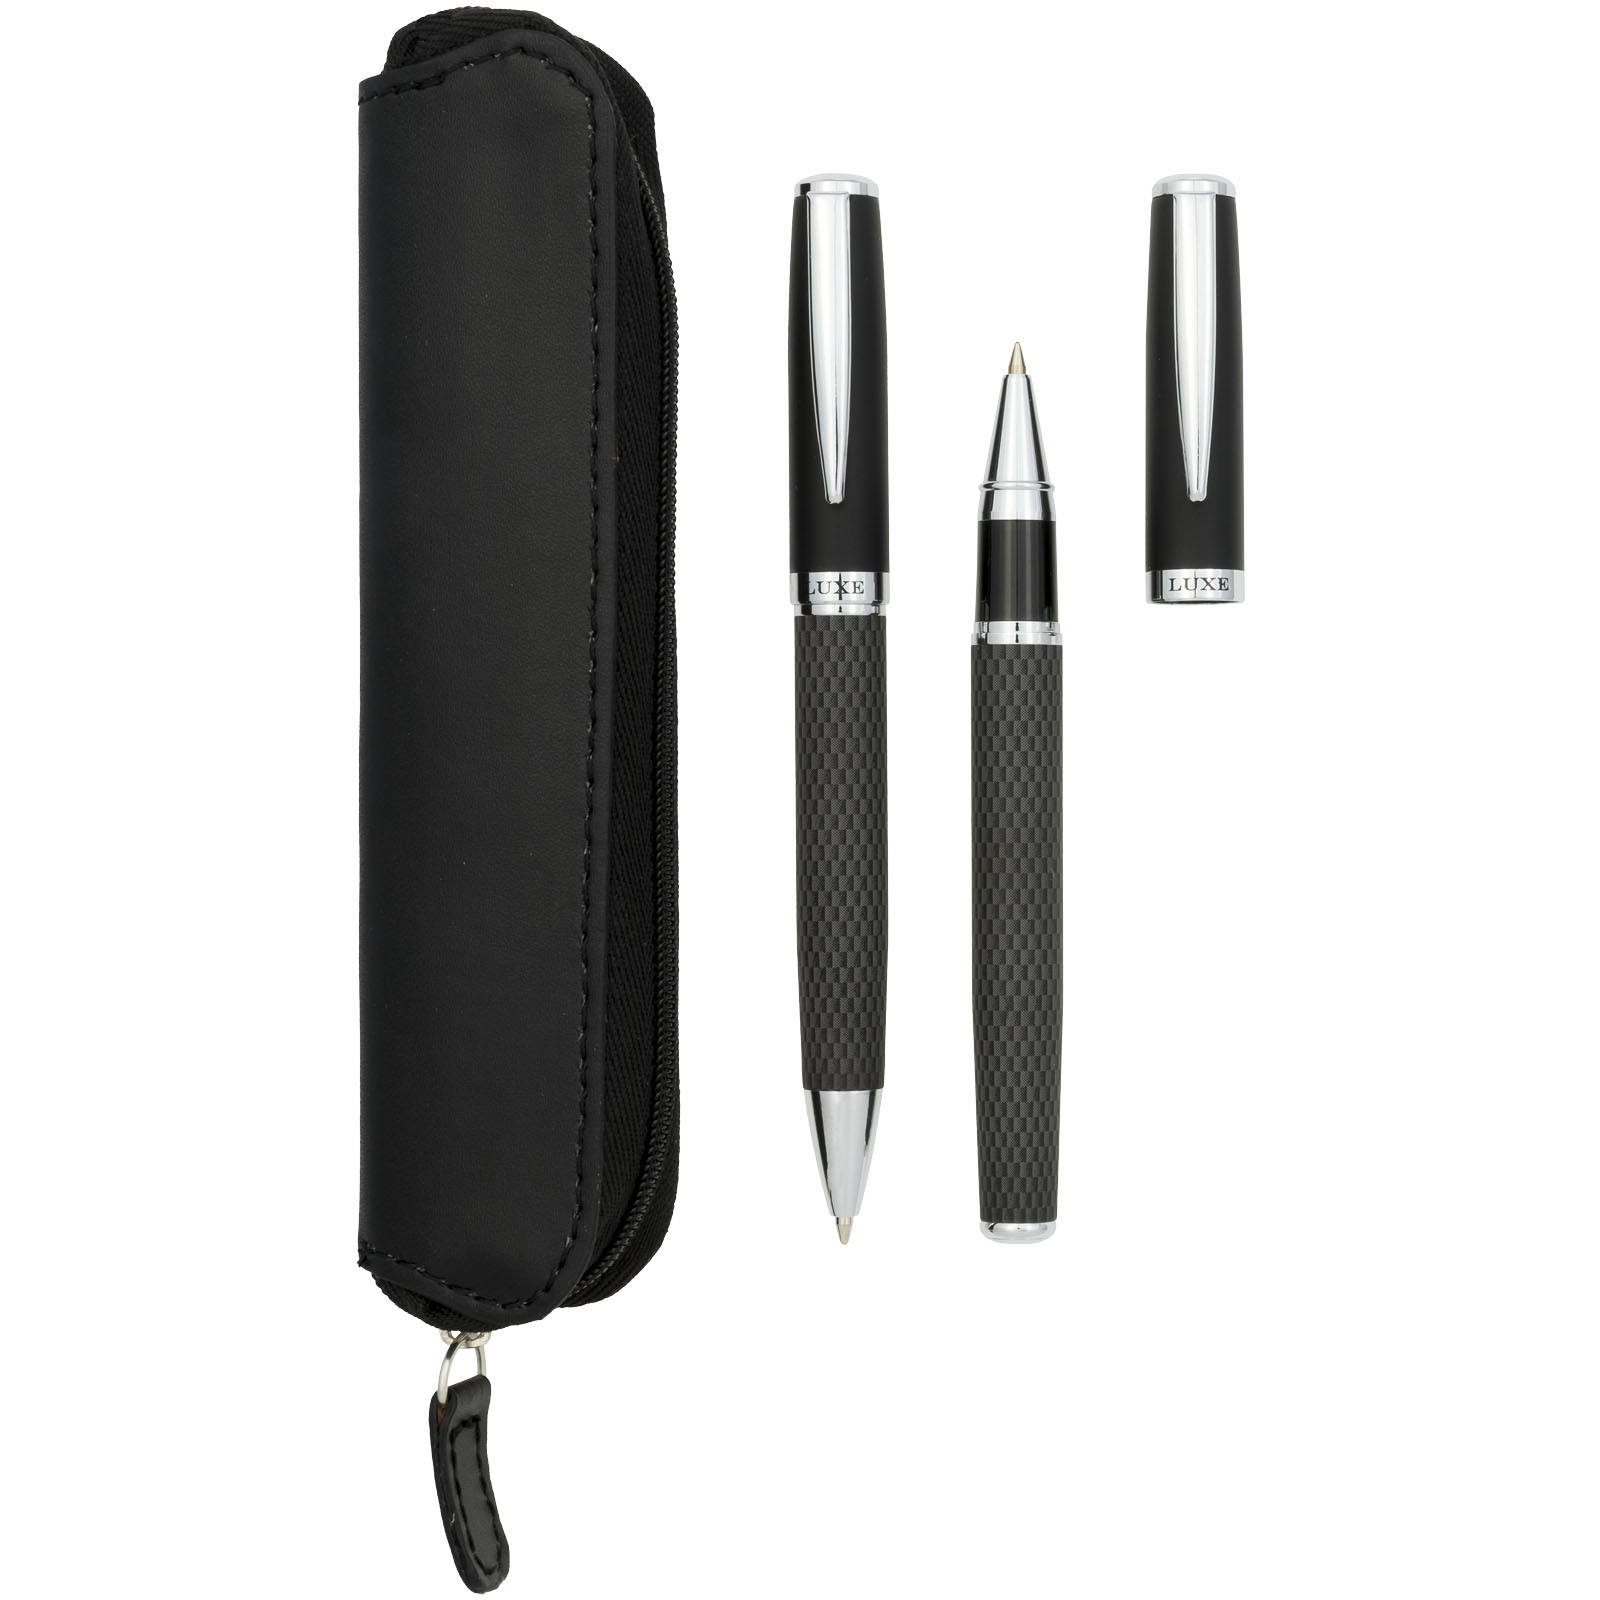 Parure de stylos publicitaires - Parure de stylos bille et roller avec étui Carbon - 4